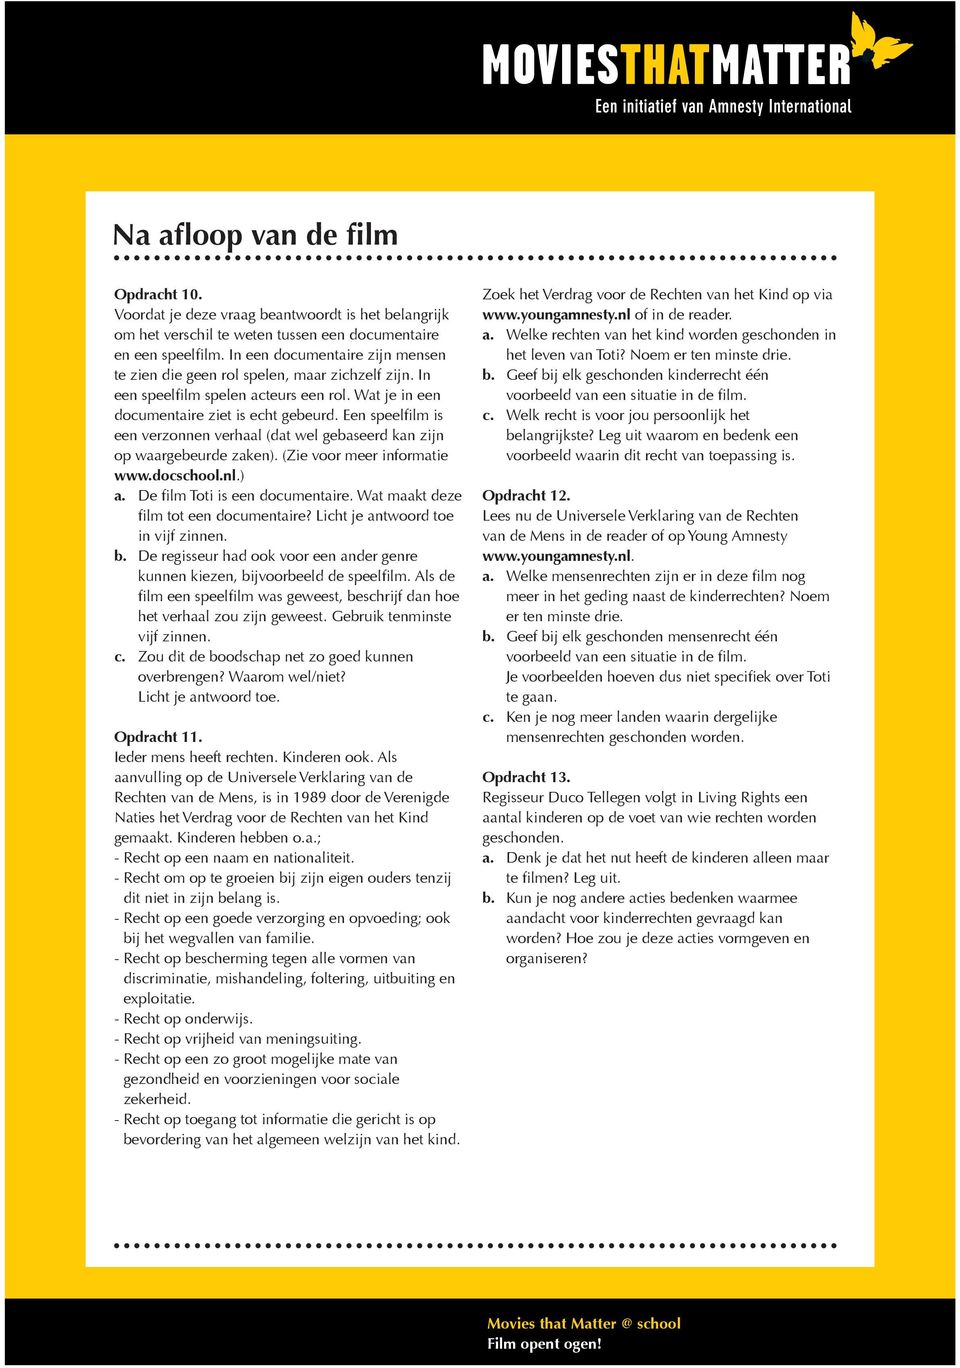 Een speelfilm is een verzonnen verhaal (dat wel gebaseerd kan zijn op waargebeurde zaken). (Zie voor meer informatie www.docschool.nl.) a. De film Toti is een documentaire.